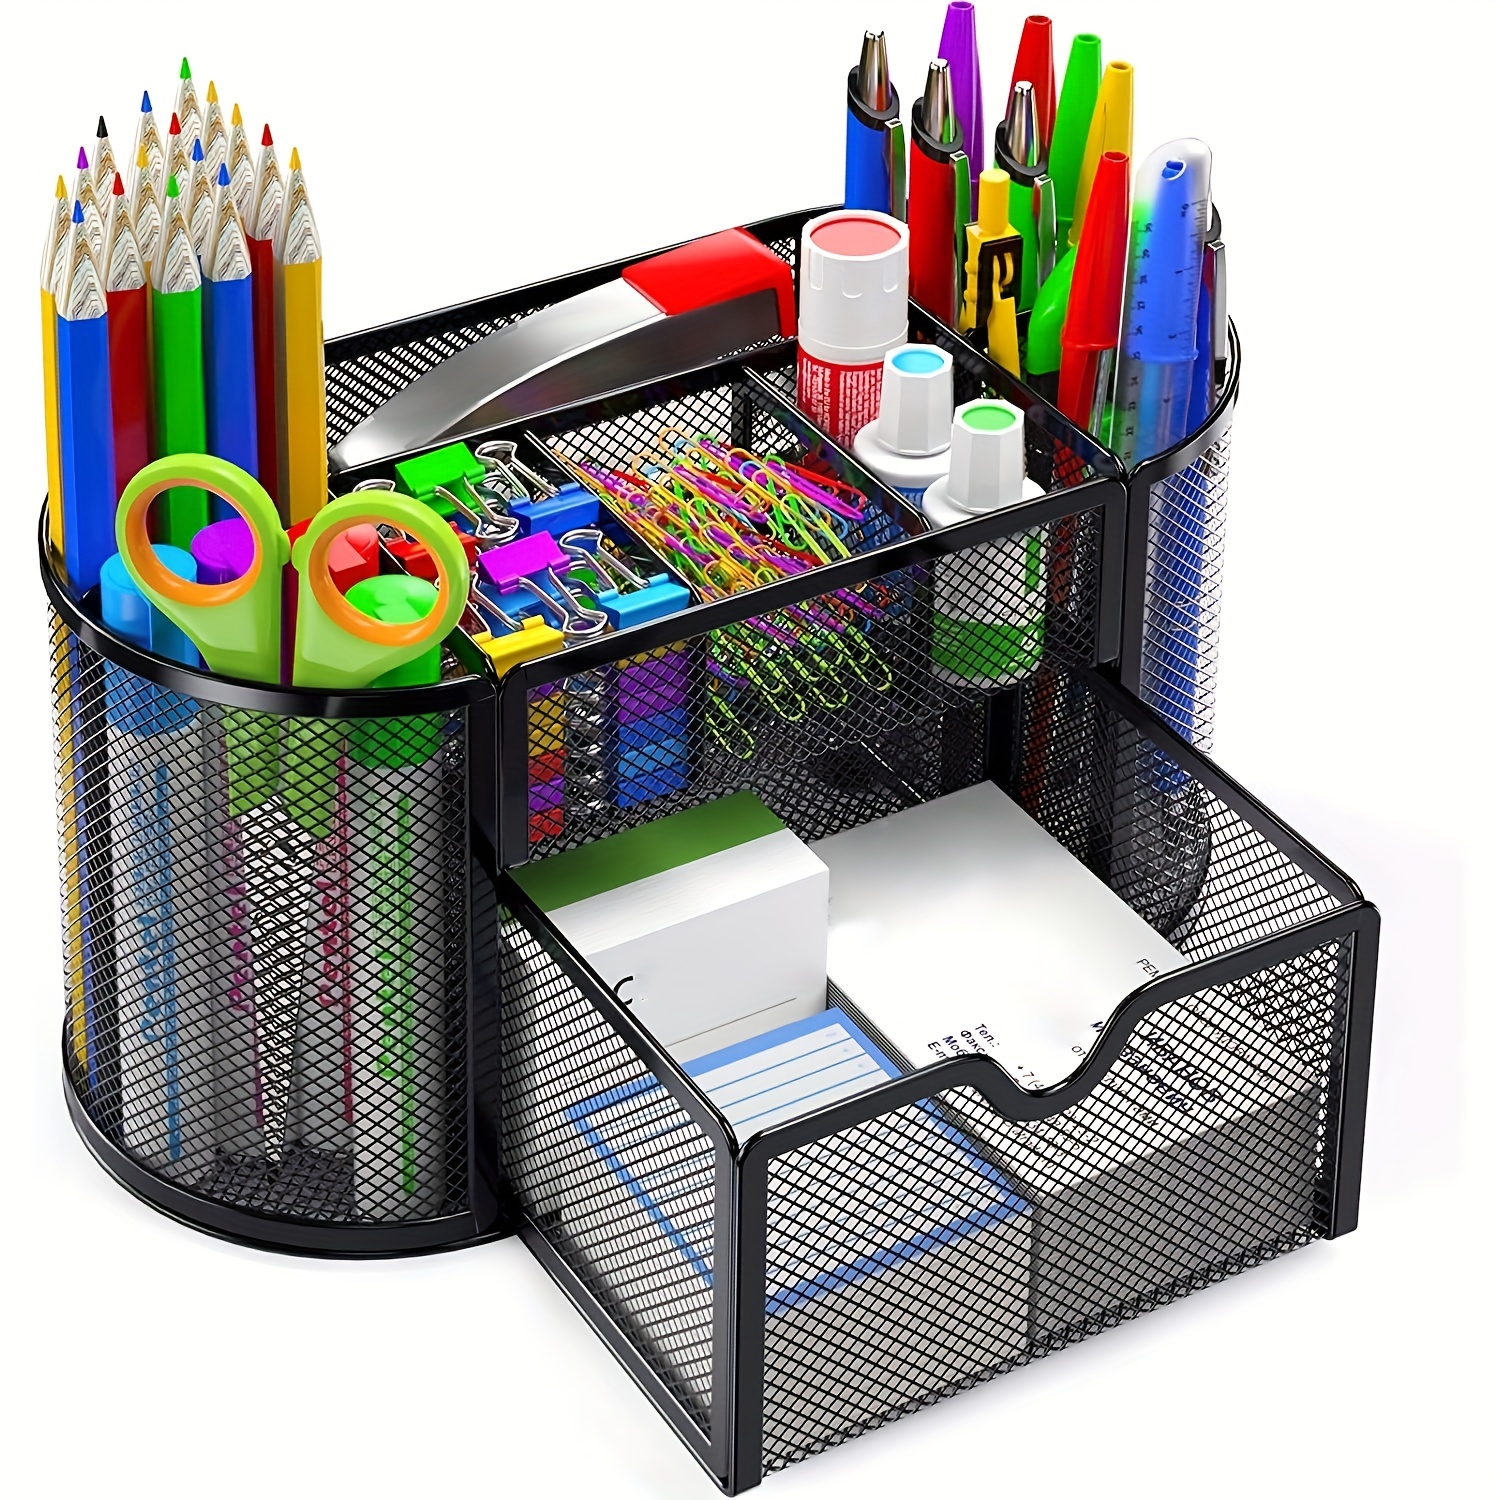 Organizador de escritorio de acrílico mejorado, todo en uno, ideal para  accesorios de oficina con 2 cajones. Para organización y decoración de